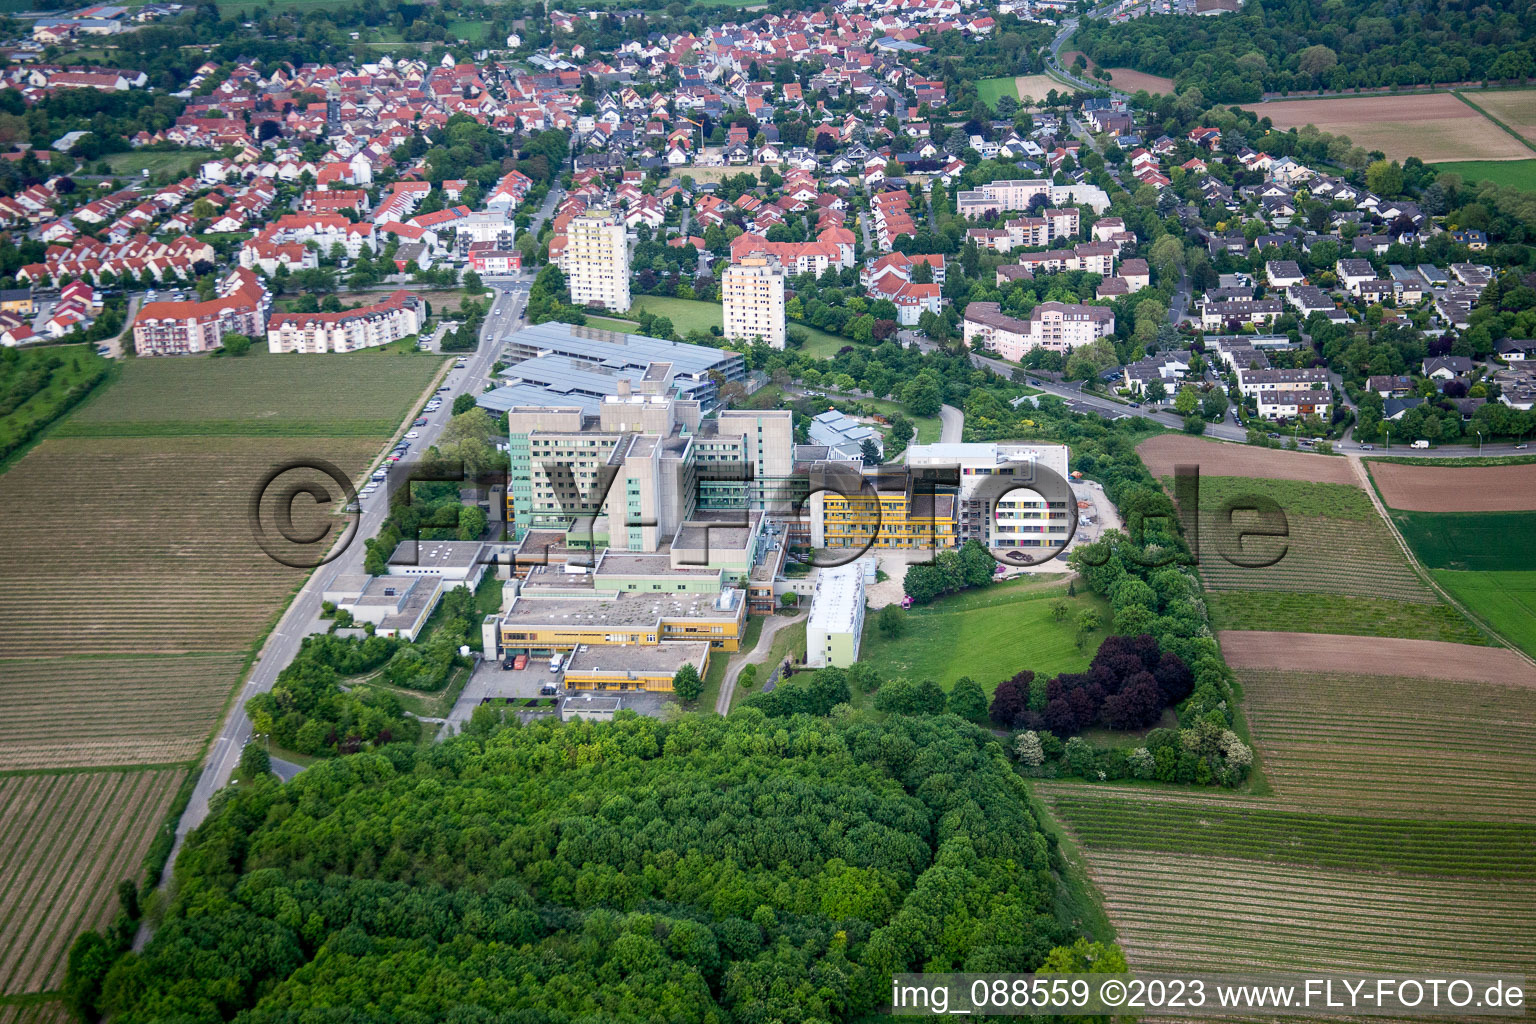 Luftbild von Klinikum im Ortsteil Herrnsheim in Worms im Bundesland Rheinland-Pfalz, Deutschland